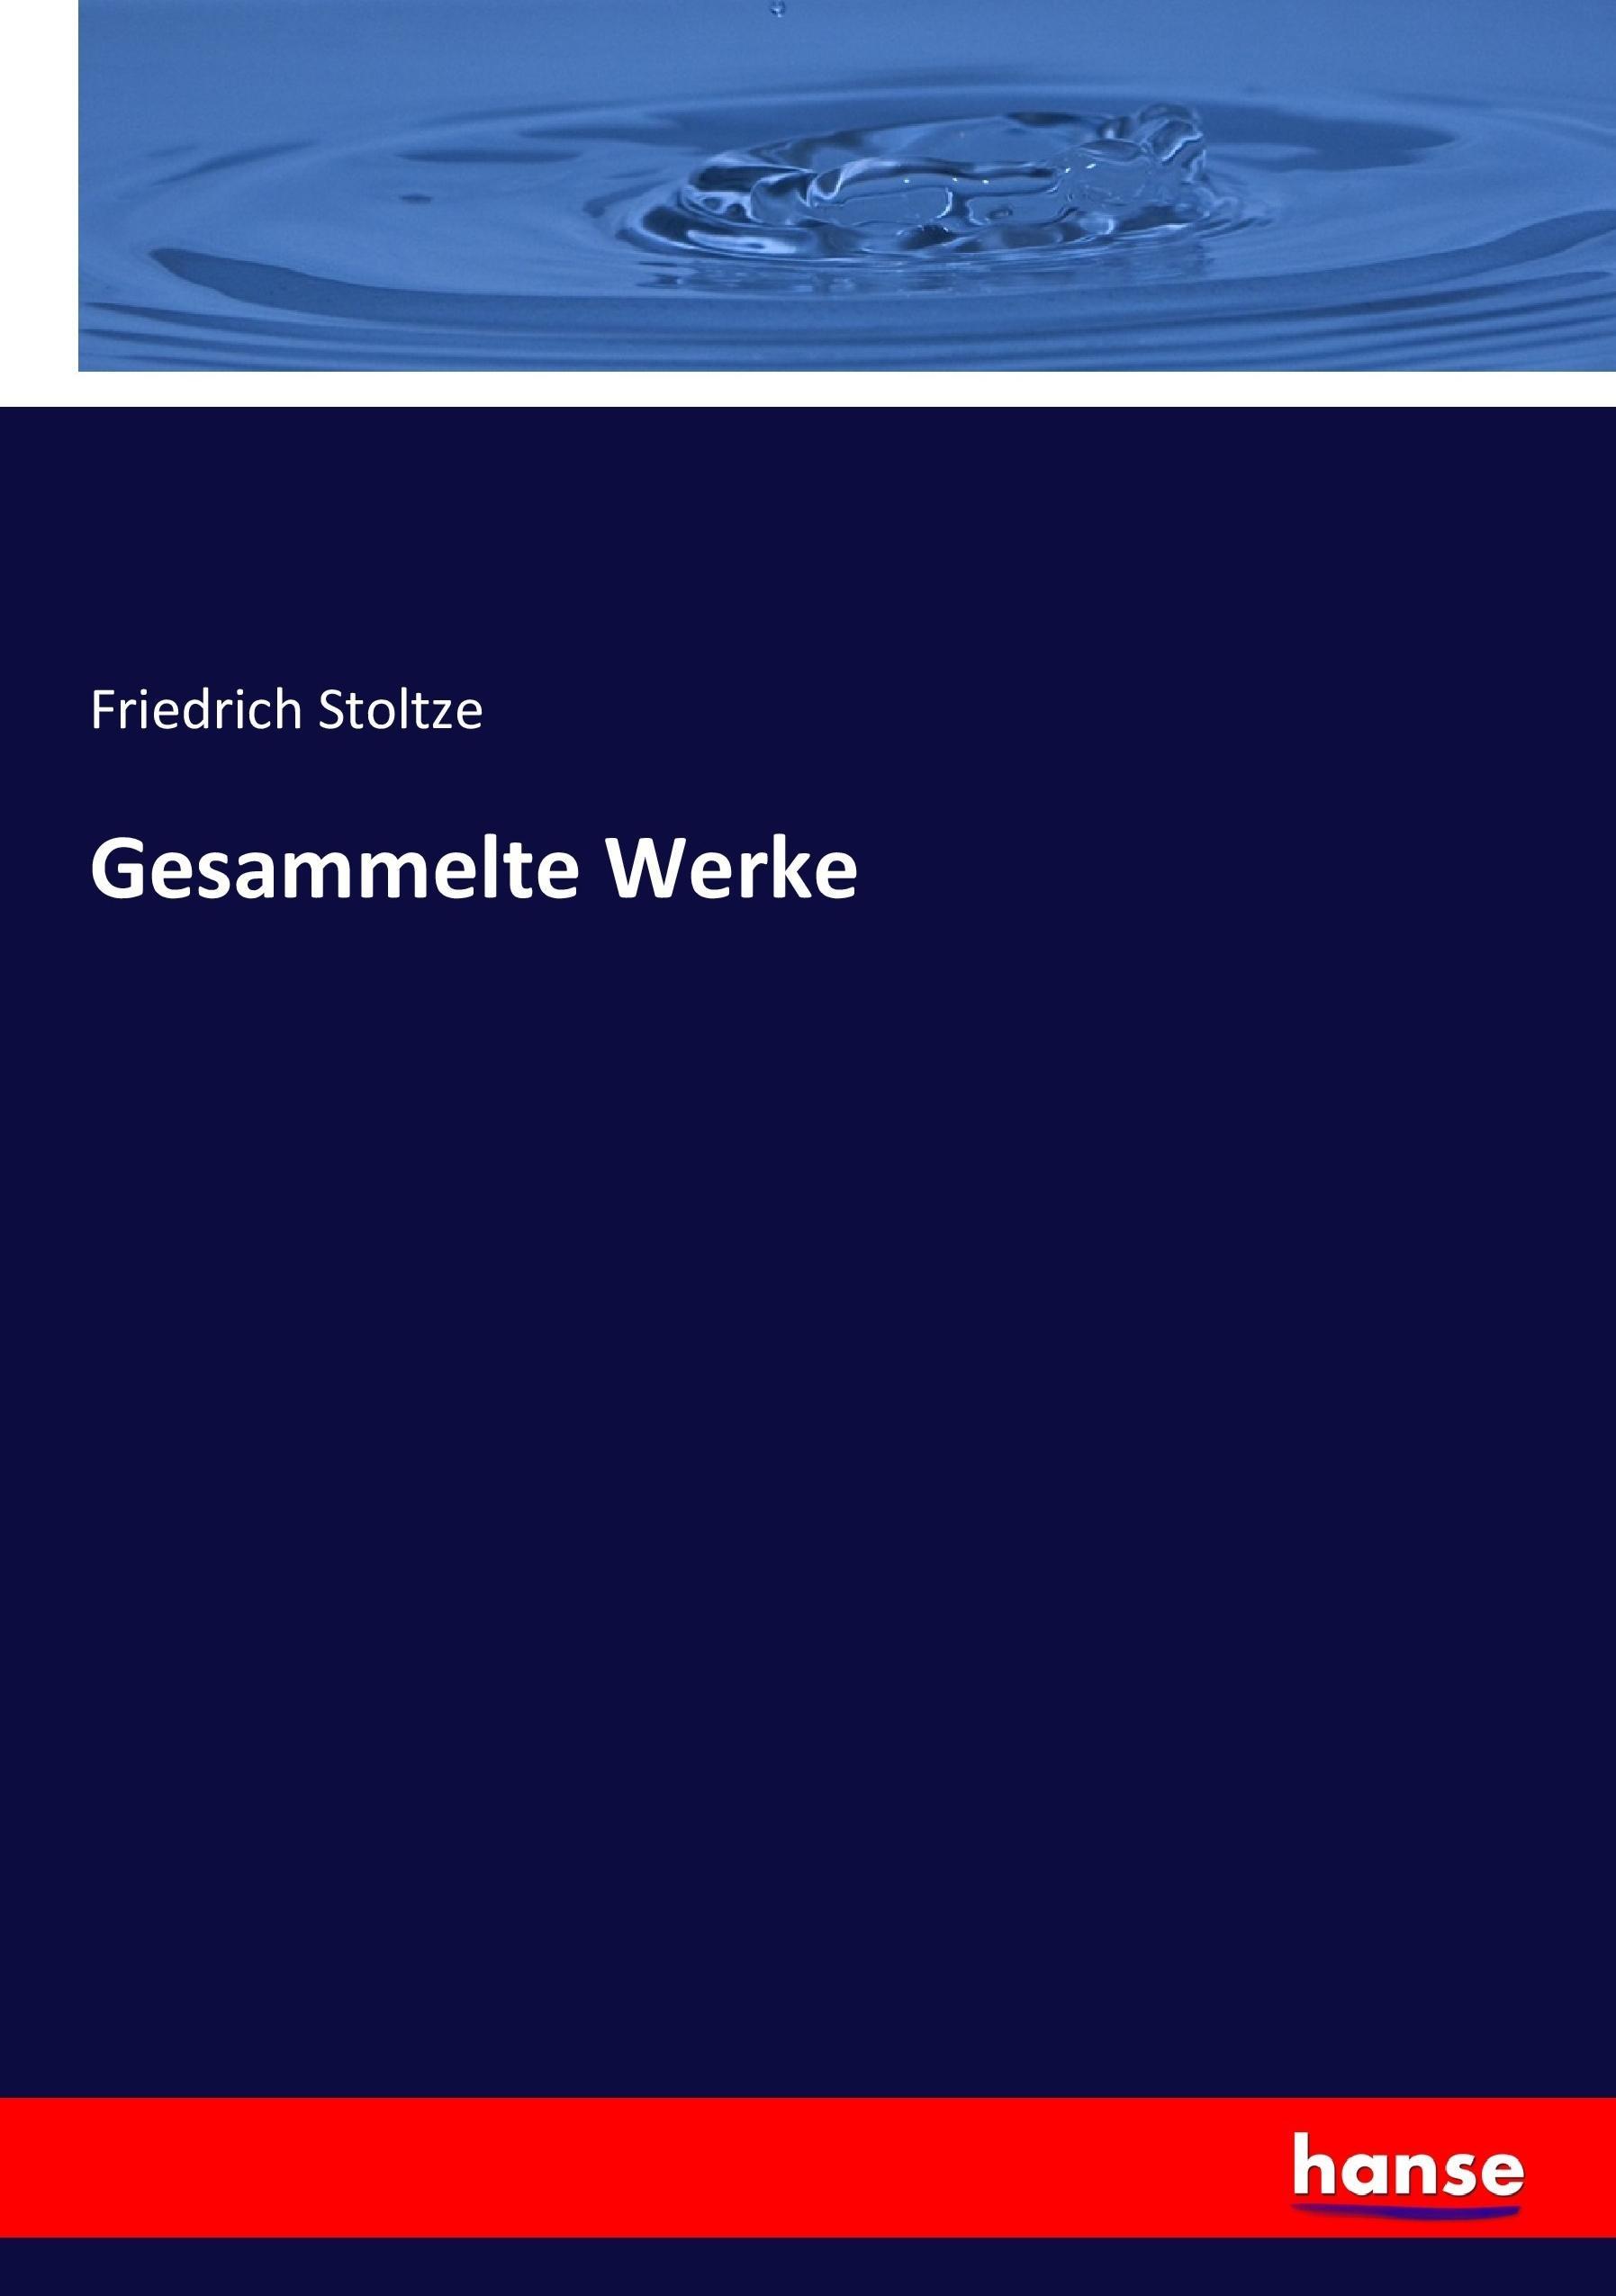 Gesammelte Werke - Zweiter Band | Gedichte in Frankfurter Mundart II | Friedrich Stoltze | Taschenbuch | Paperback | 388 S. | Deutsch | 2018 | hansebooks | EAN 9783744624015 - Stoltze, Friedrich